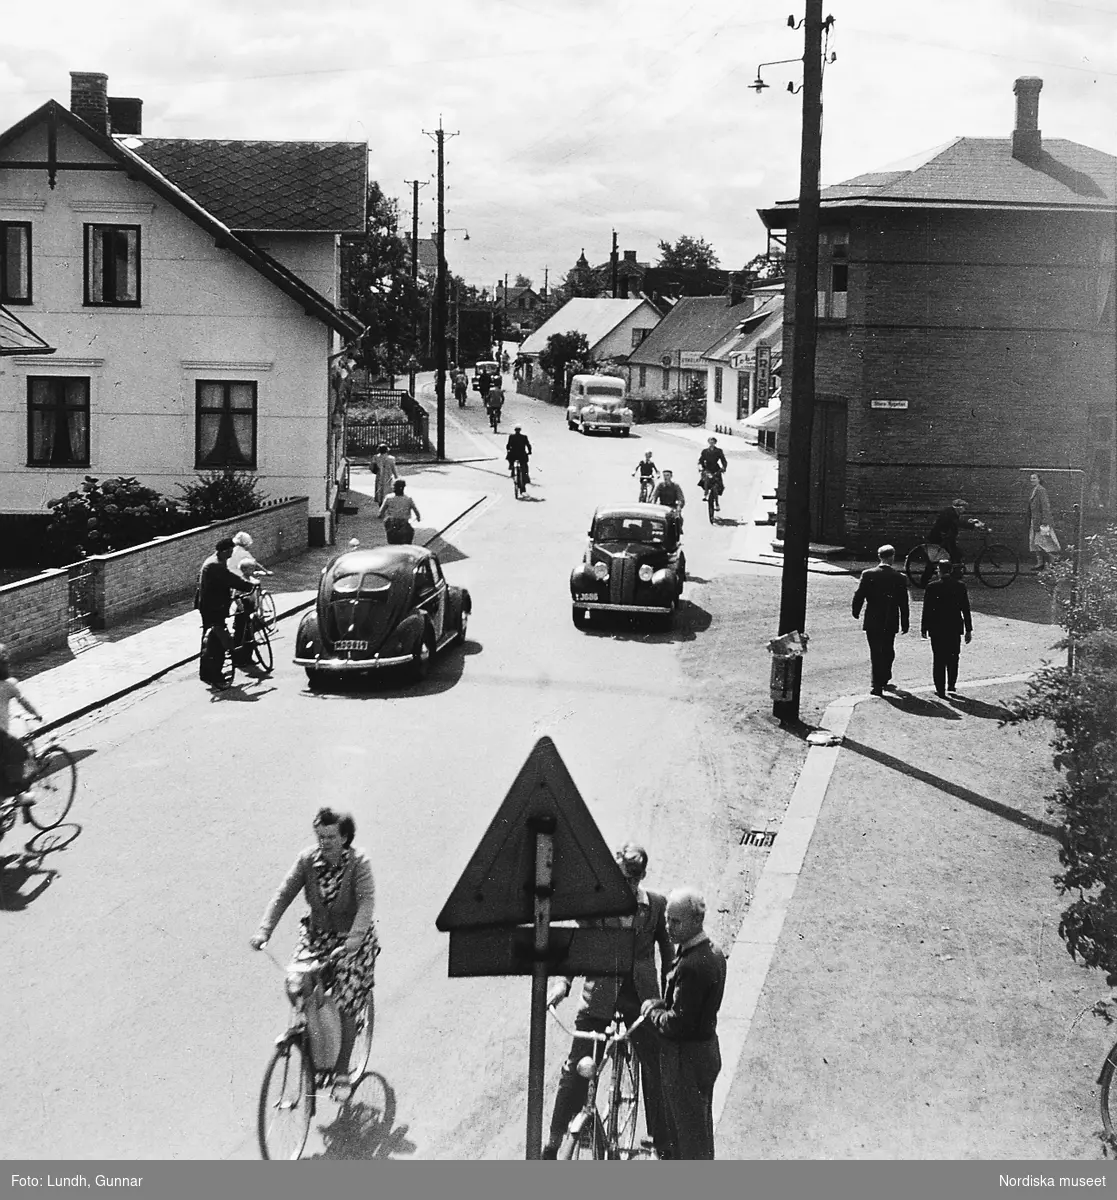 "Bruksgatan i Höganäs där Gunnar Lundh är född" Bilar, cyklister och fotgängare på en gata med villabebyggelse år 1952.